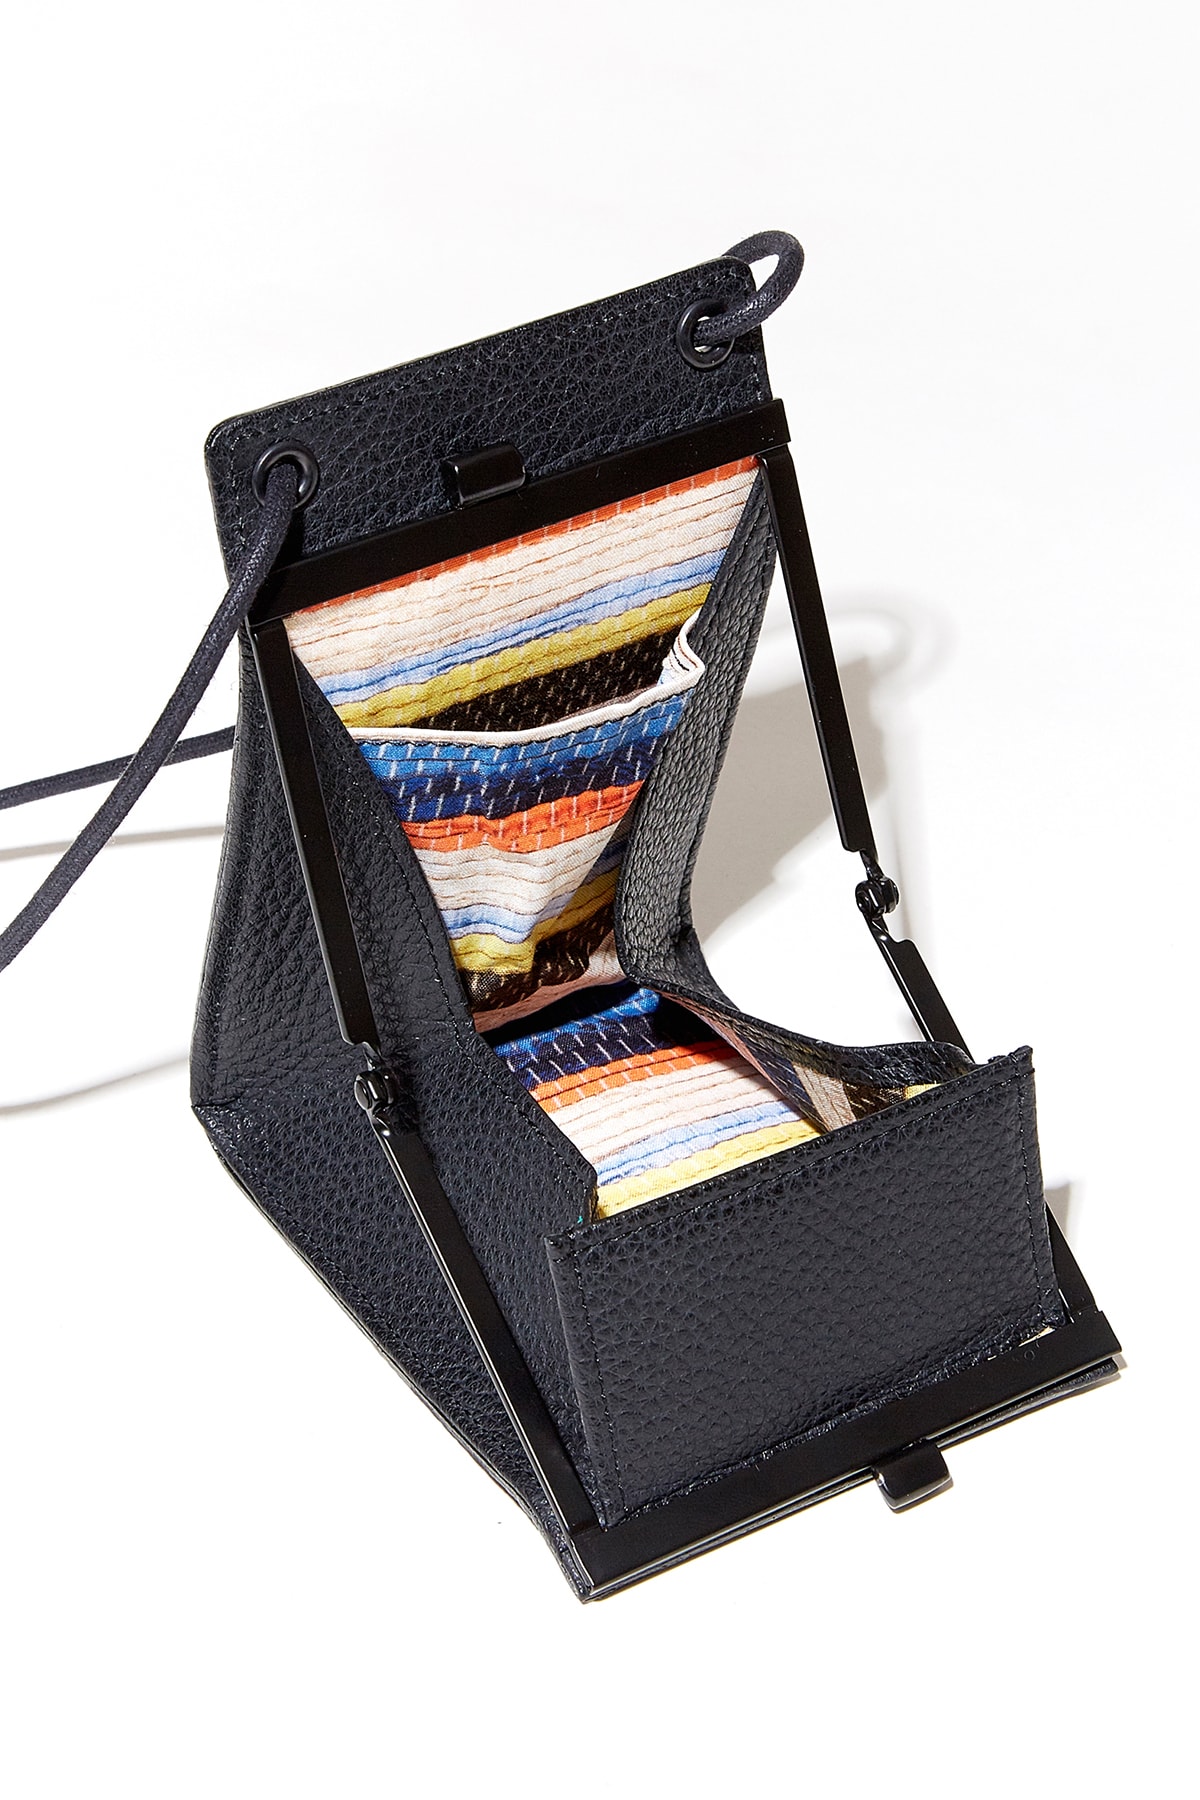 KUON 攜手日本配件品牌 yorozu 打造首款背掛式錢包